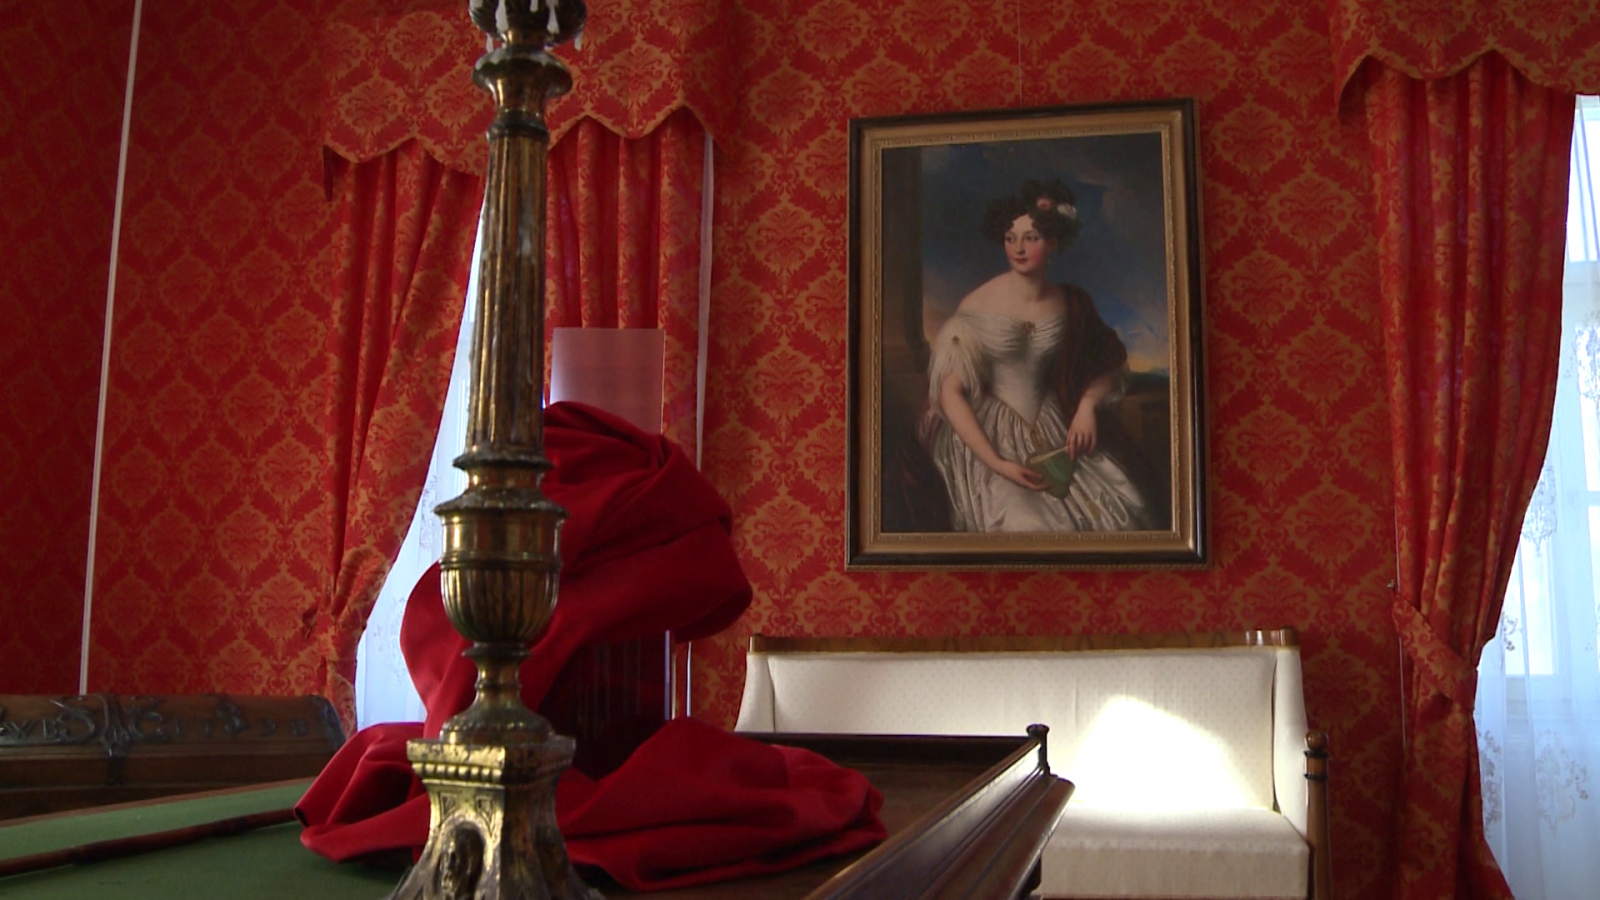 A vörös szoba, Claudia portréjával. A sarokban észrevehető a méretes utazóláda